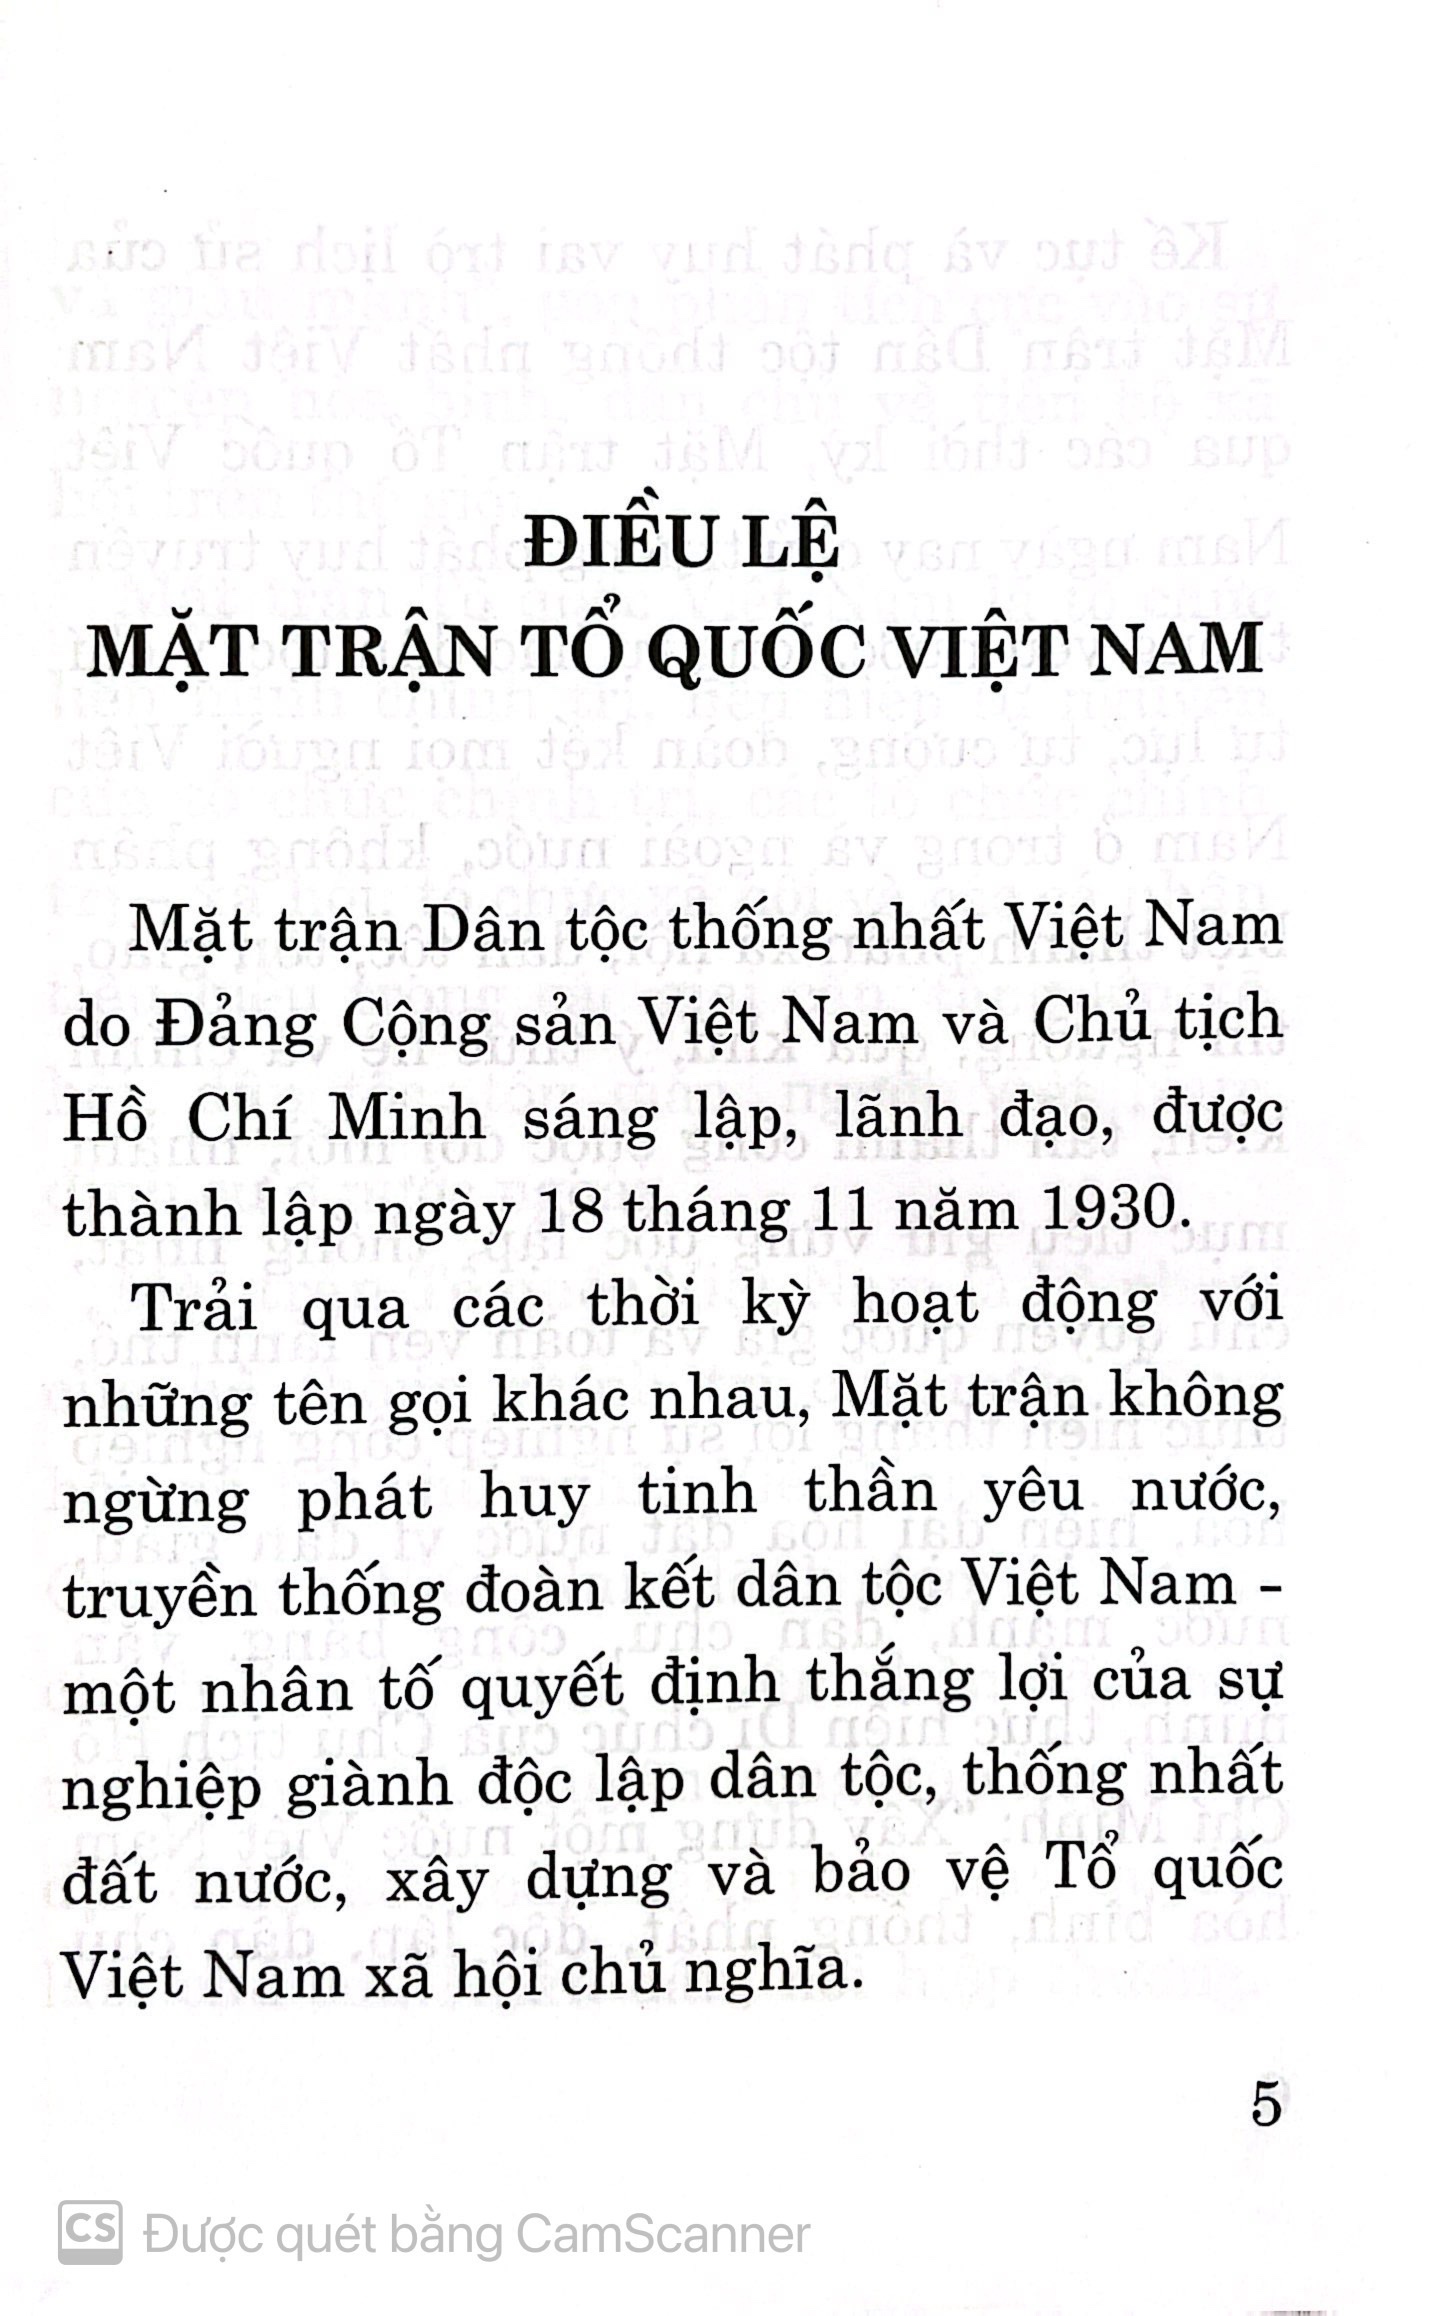 Điều lệ mặt trận Tổ quốc Việt Nam